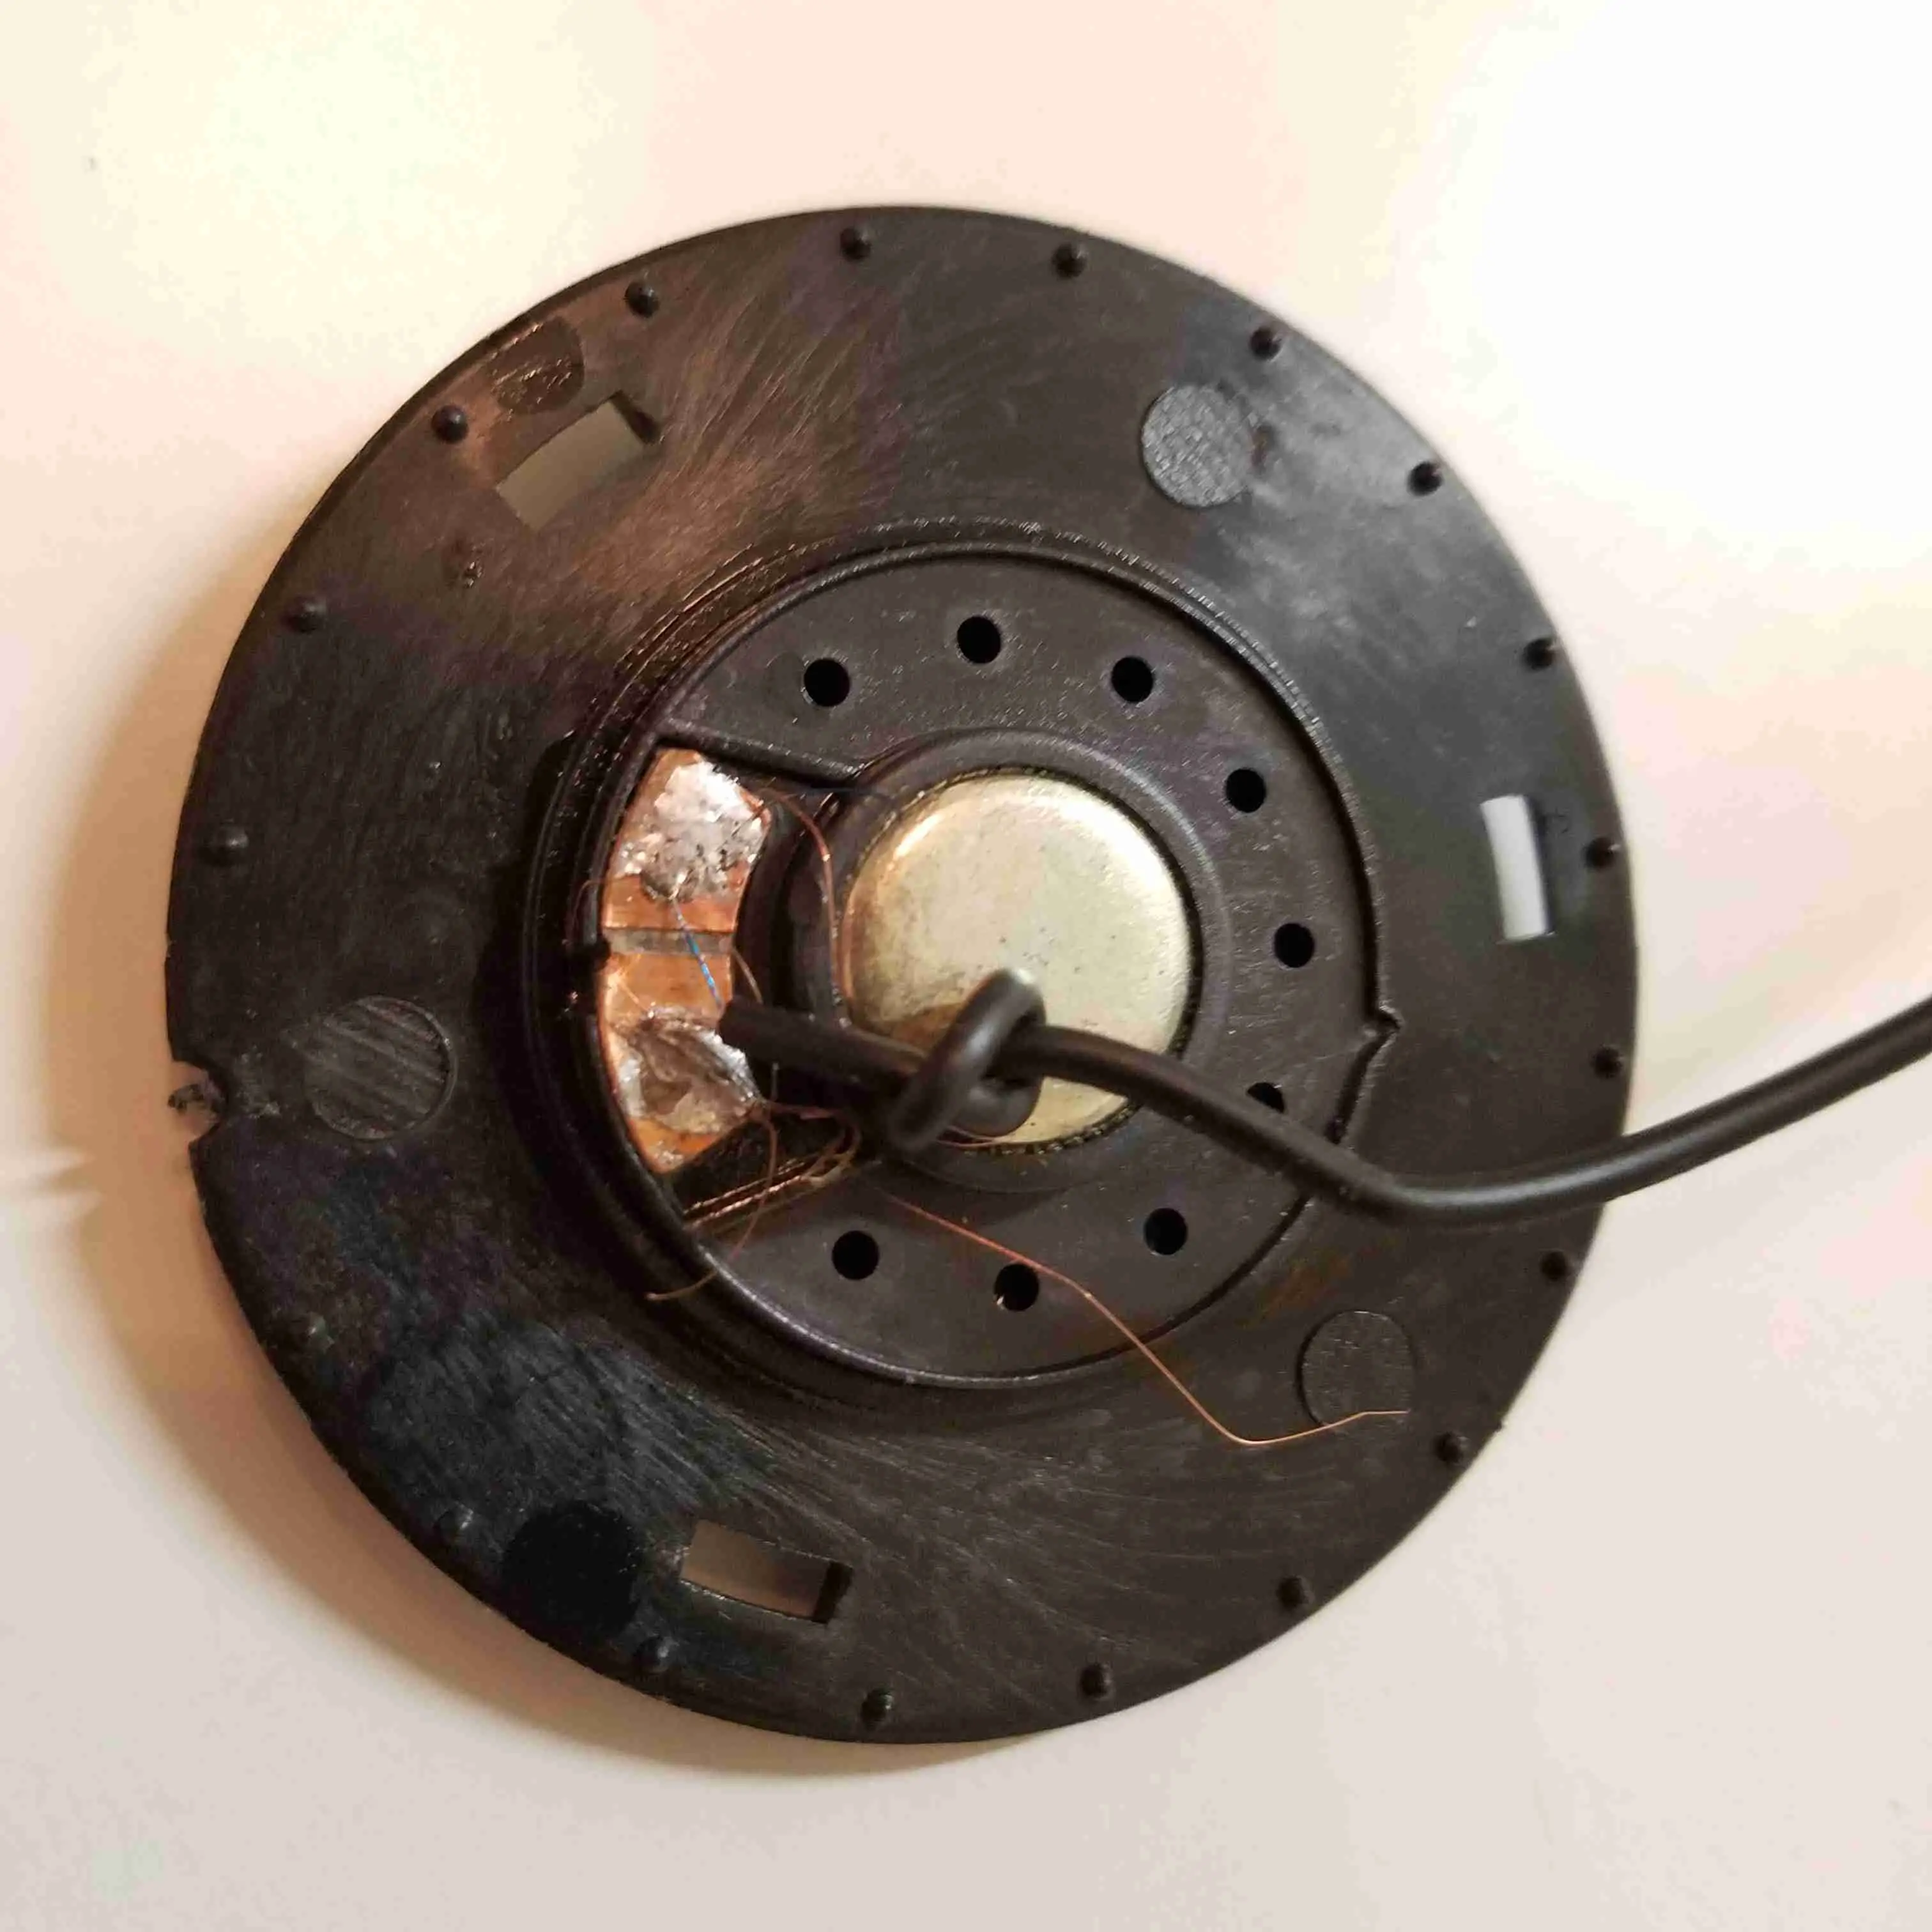 Se você vir algum fio rompido, reconecte-o ao driver do fone de ouvido soldando-o ao pino desencapado.